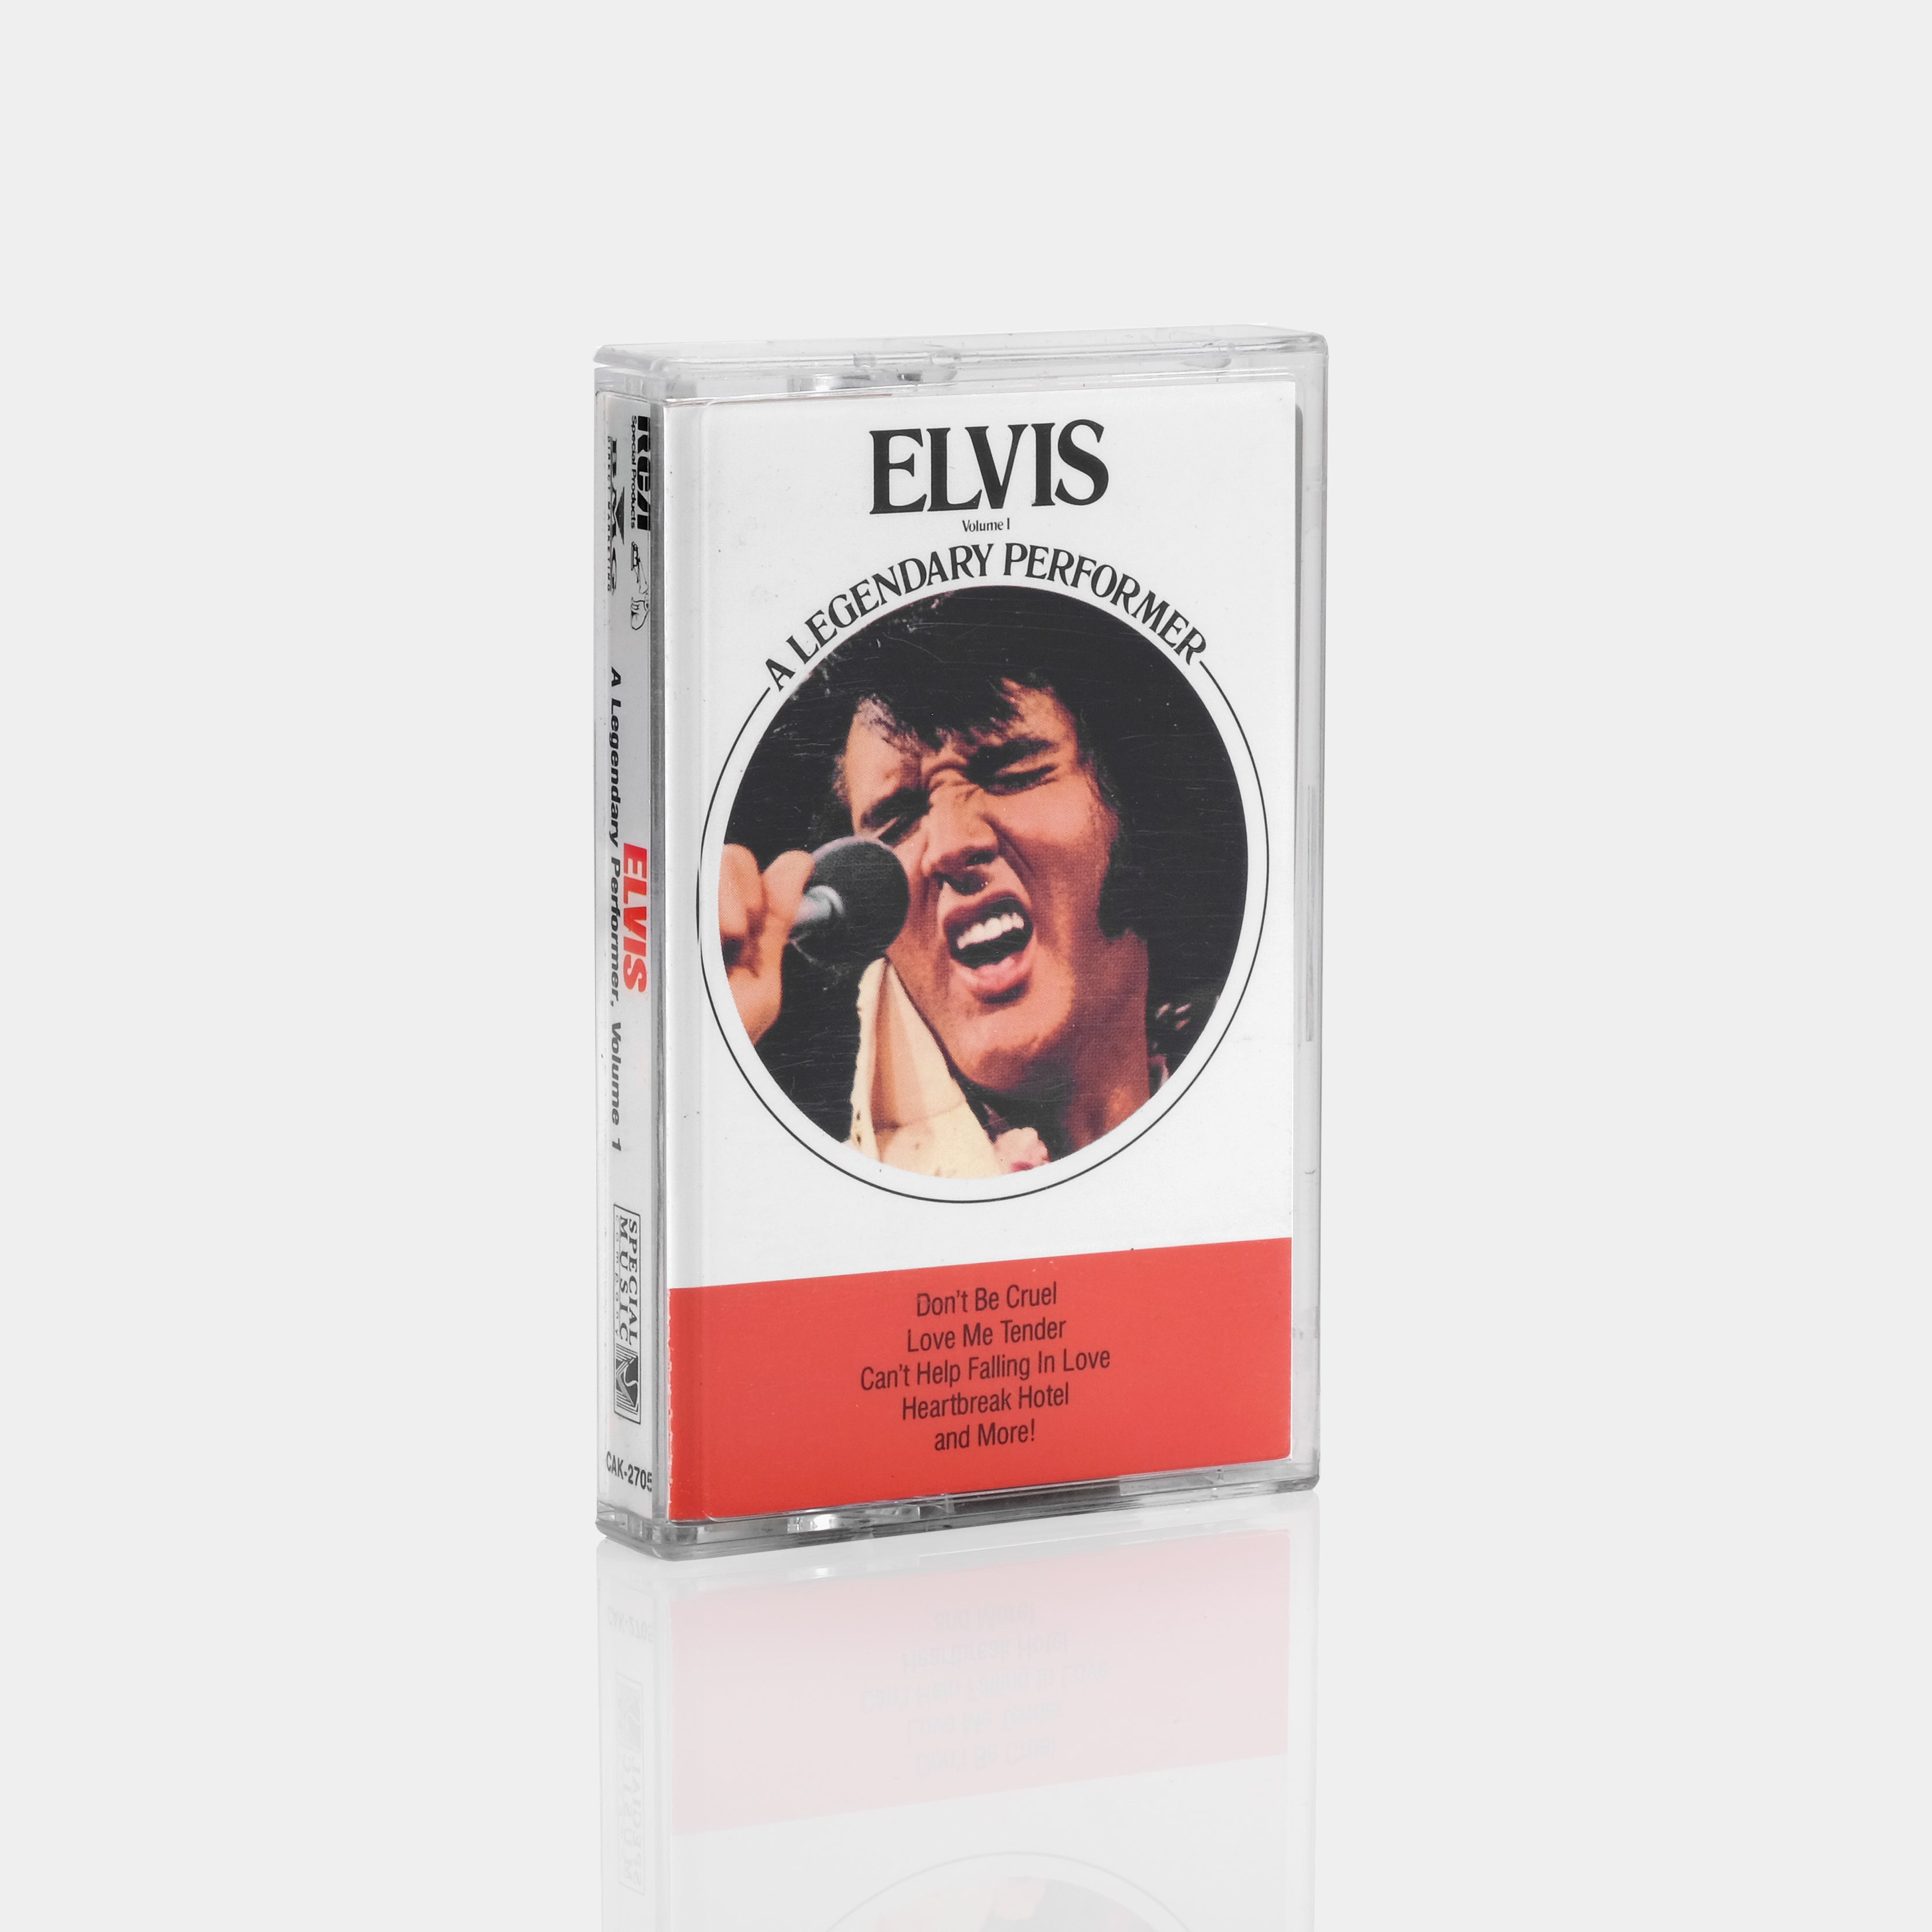 Elvis Presley A Legendary Performer Volume 1 Cassette Tape